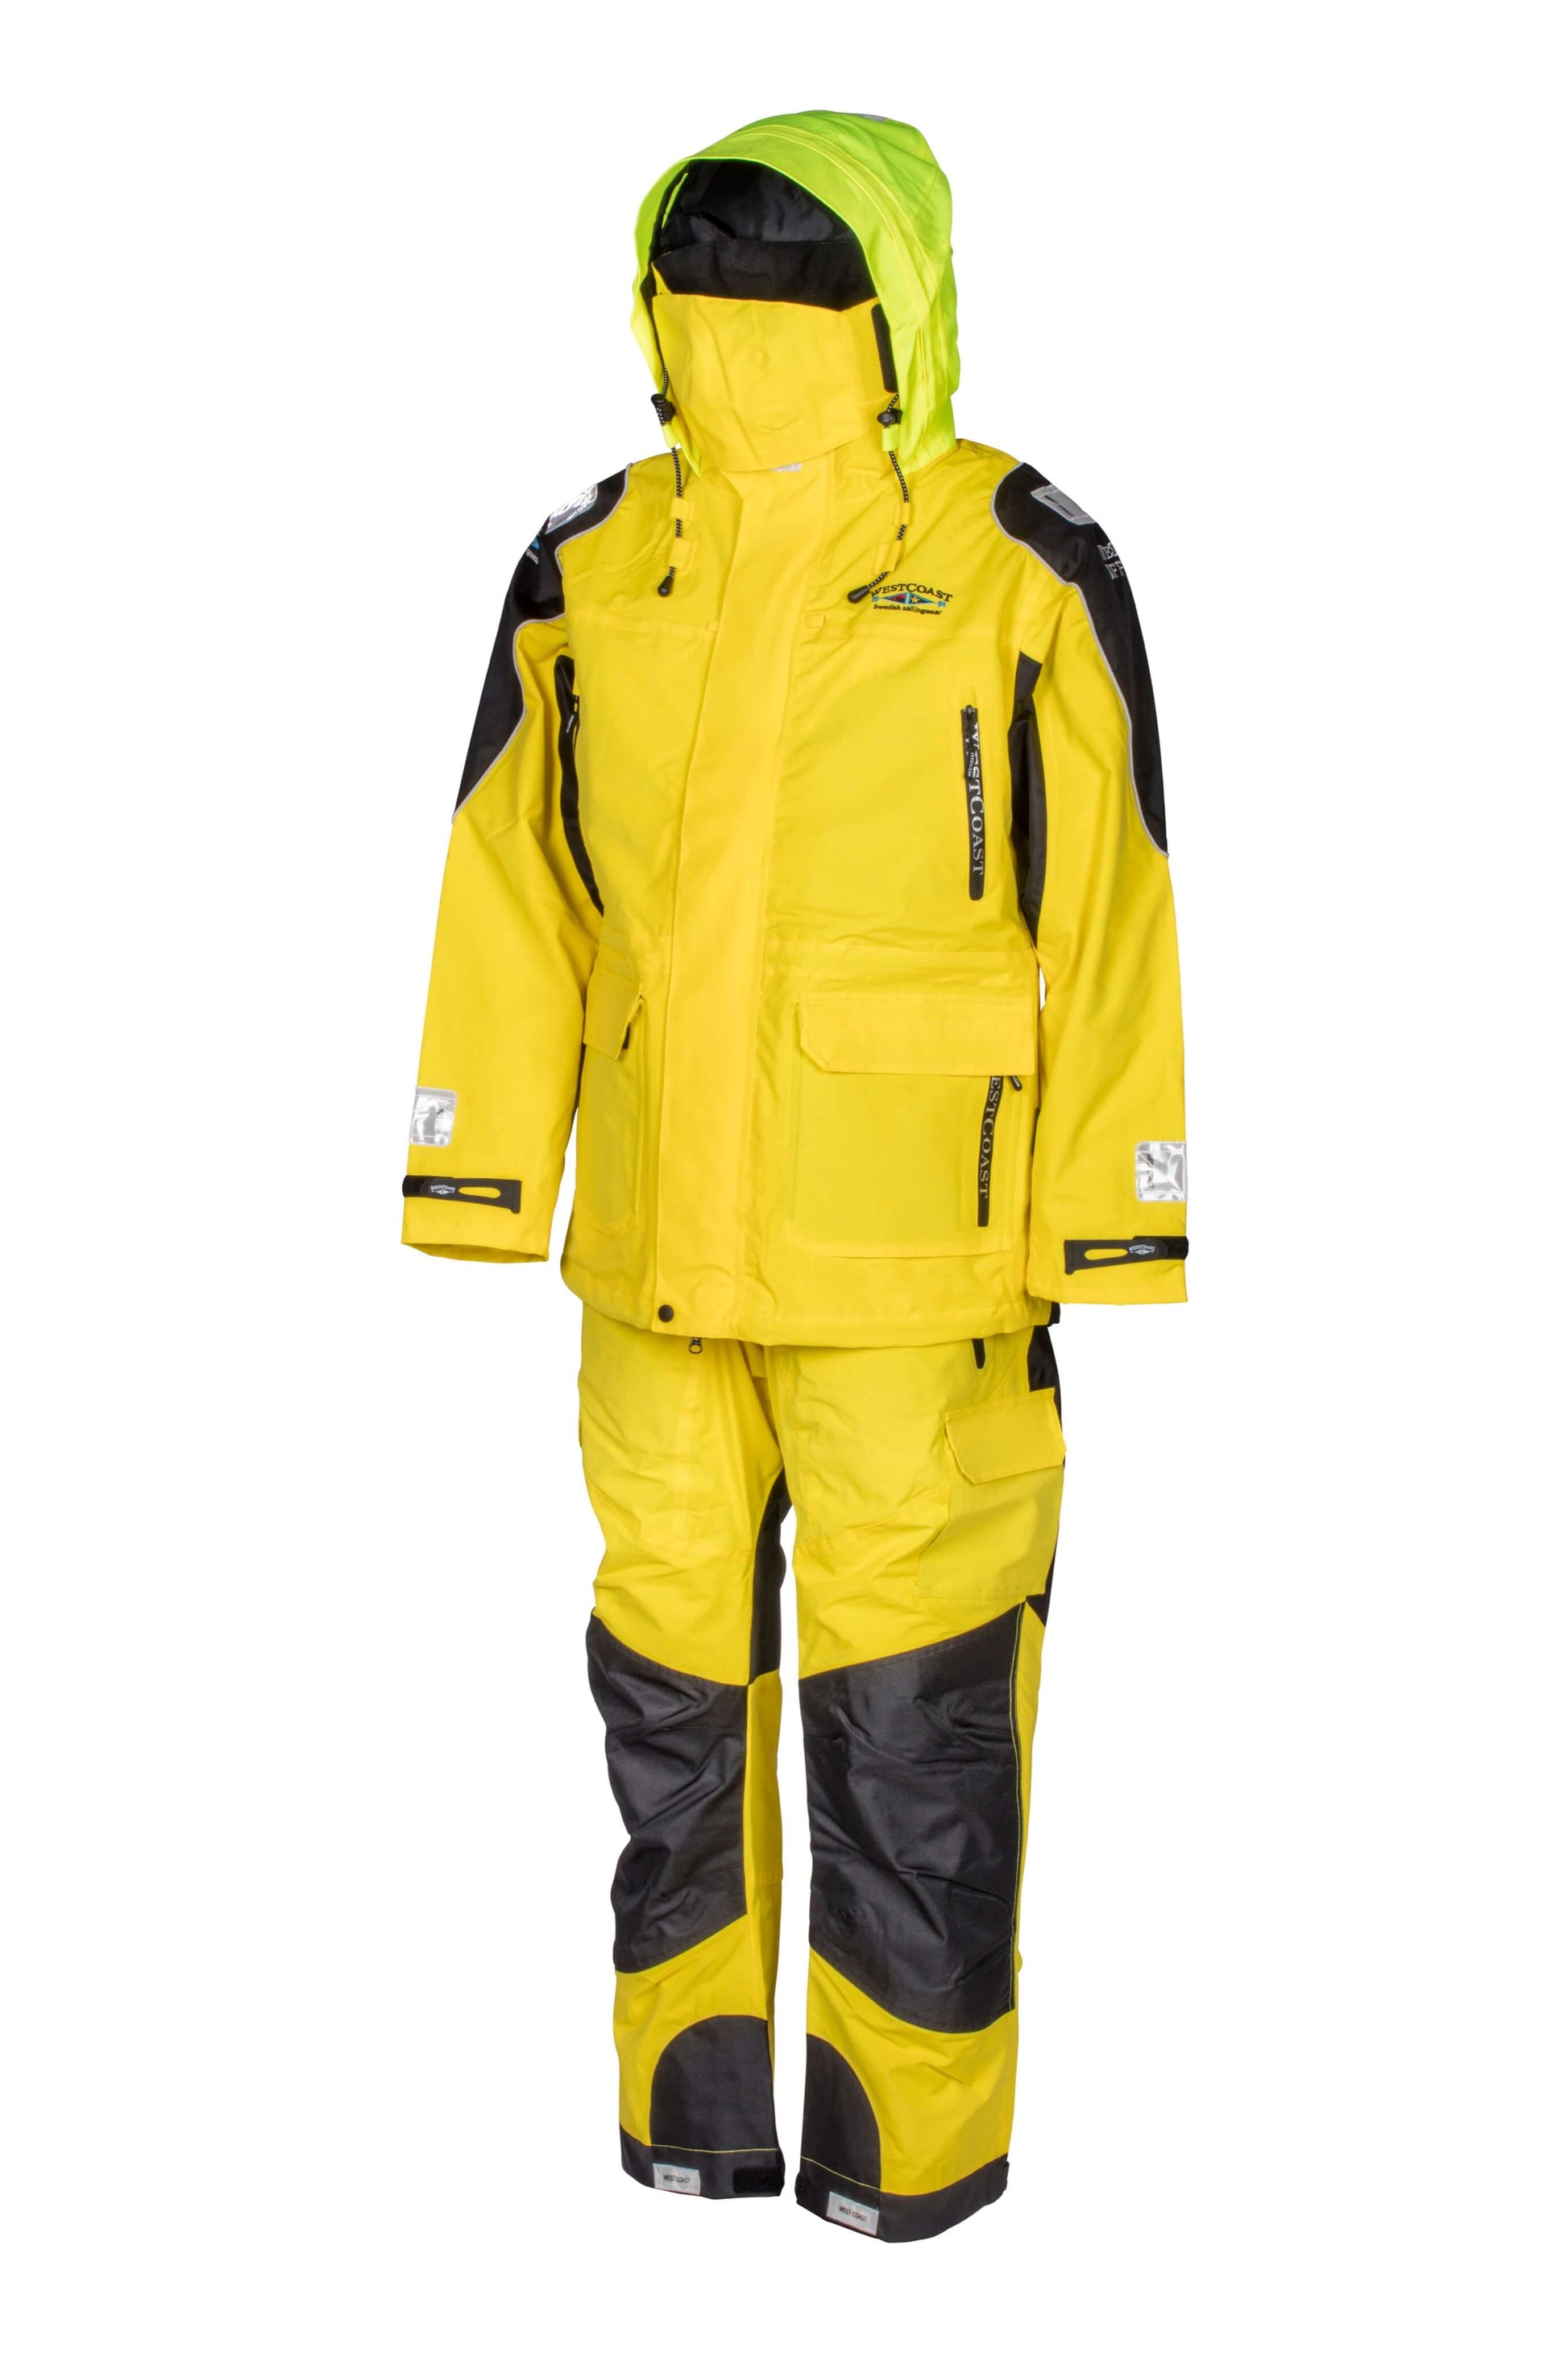 Foul Weather Gear - WESTCOAST OFFSHORE Set - Women's / Men's (Unisex) - WESTCOAST Swedish Sailingwear